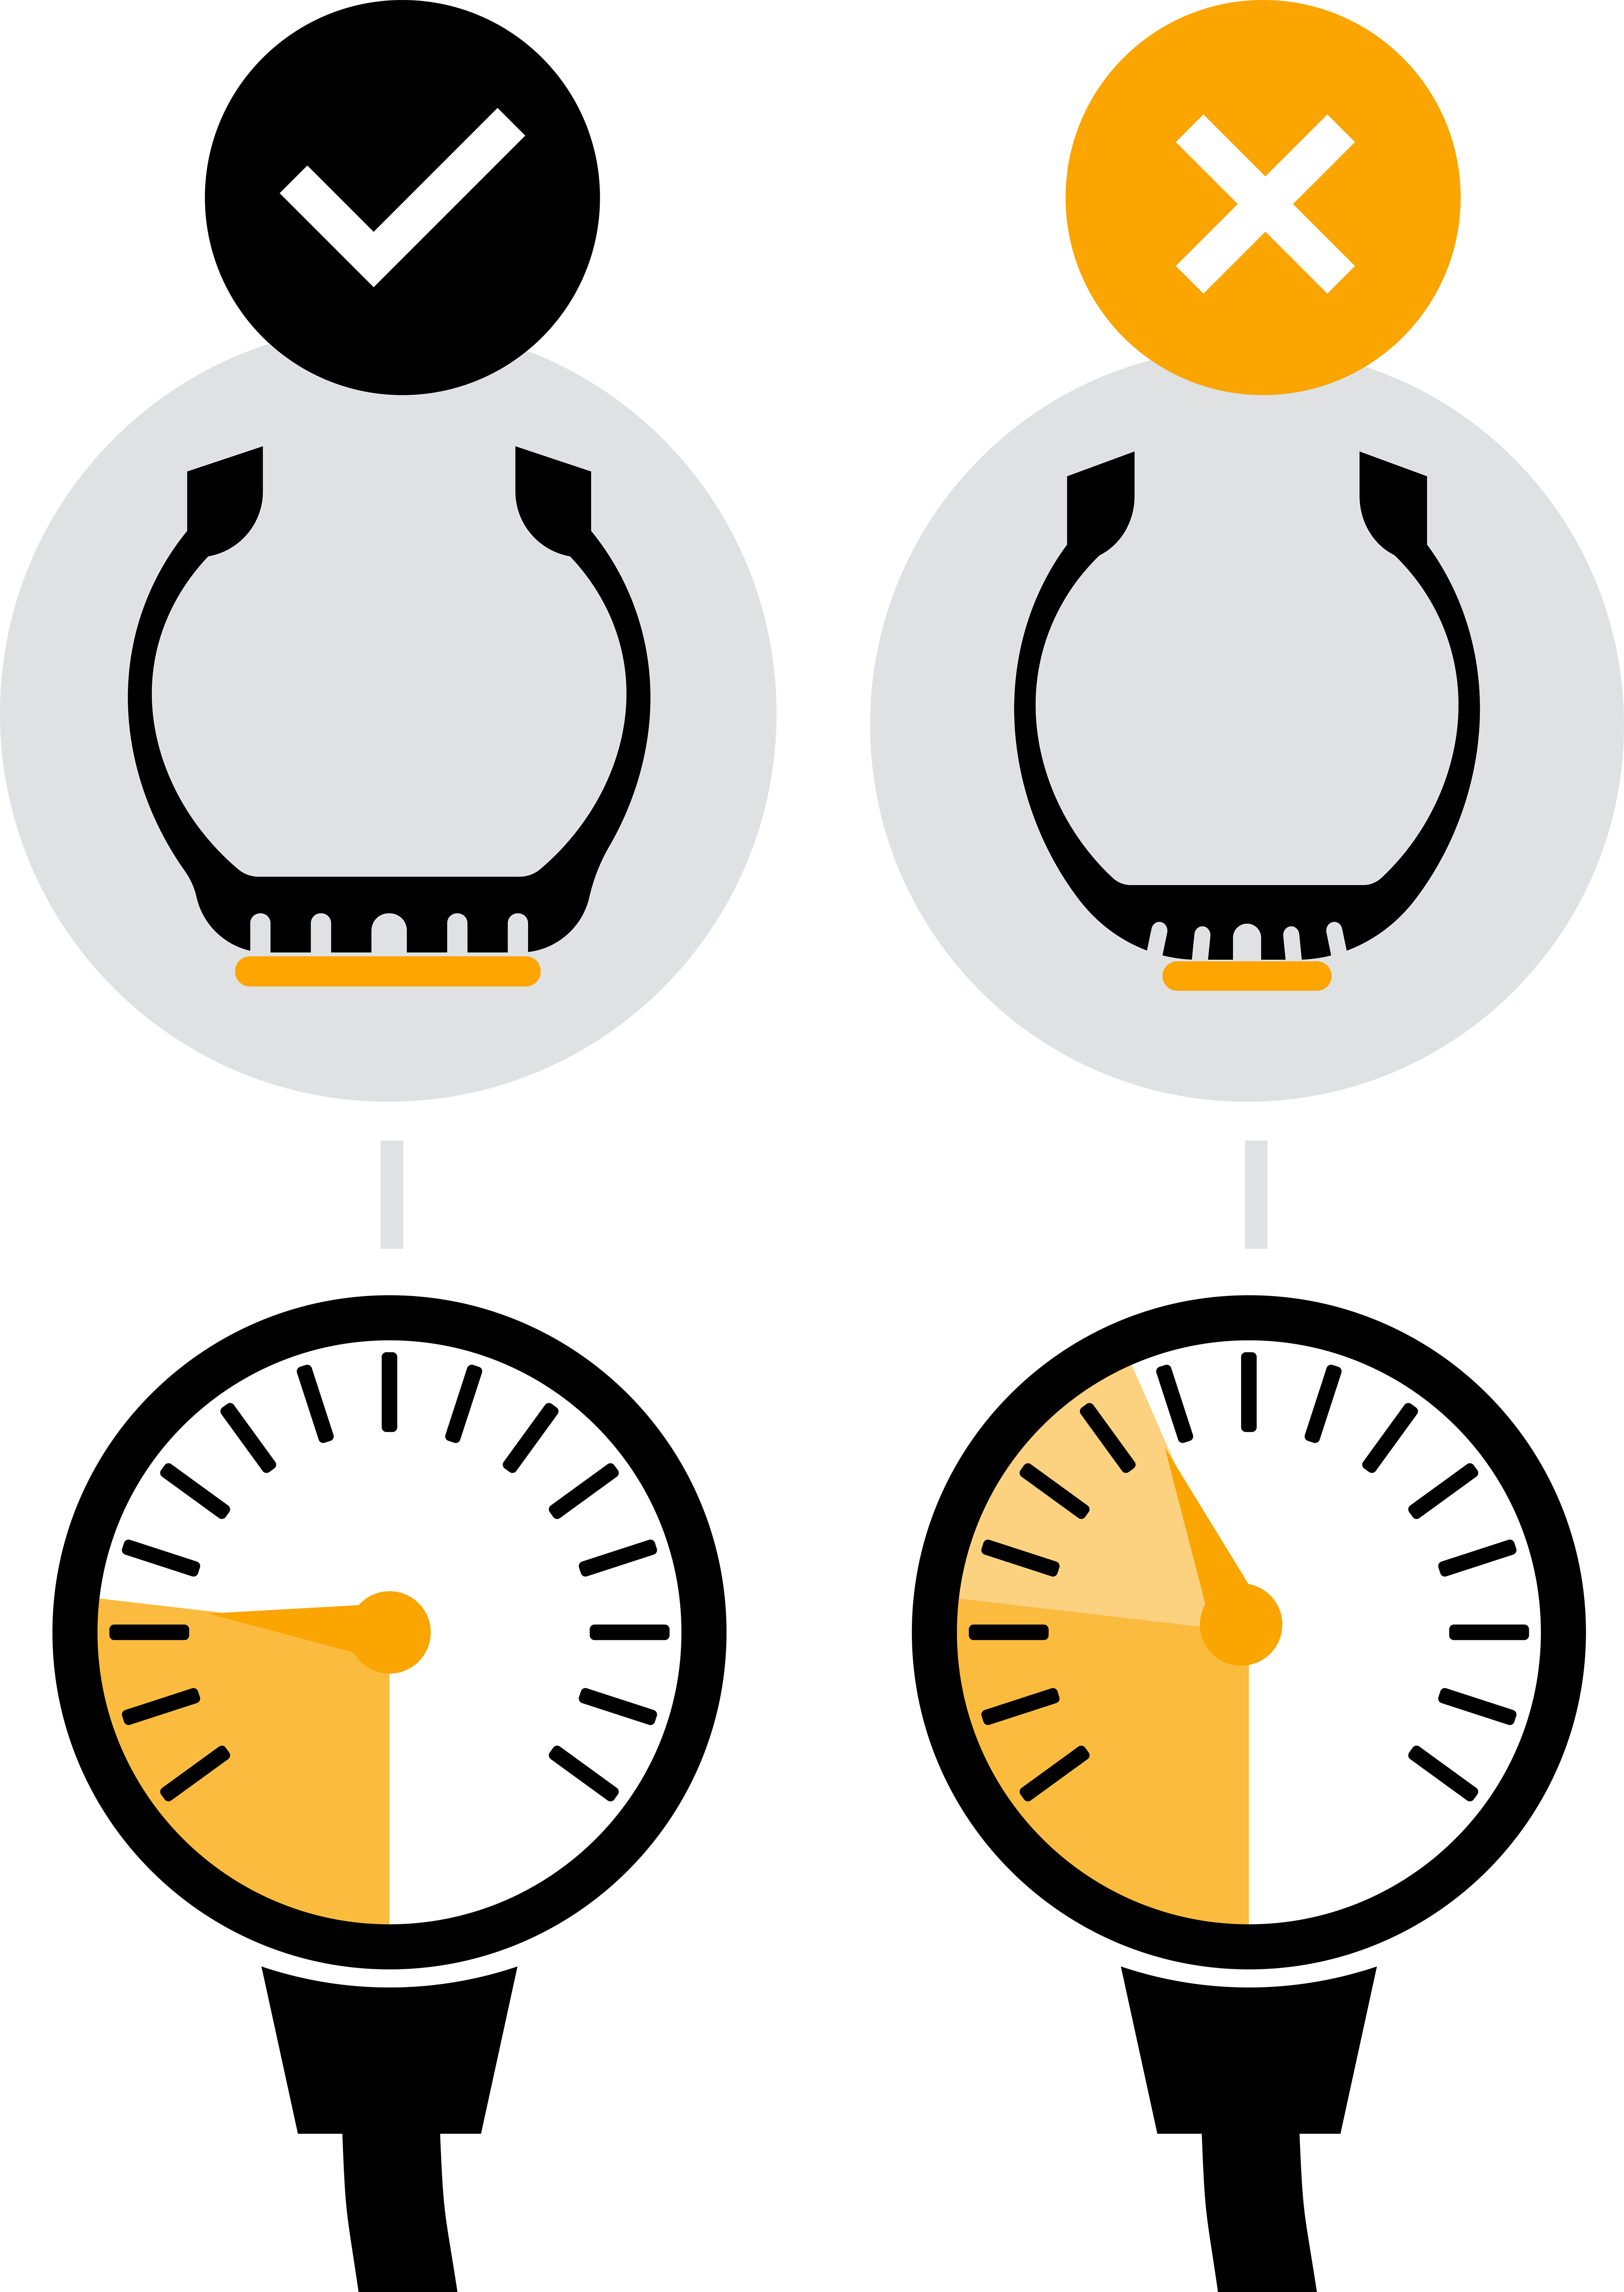 Två däckprofiler med rätt och fel däcktryck tillsammans med två mätare visas.